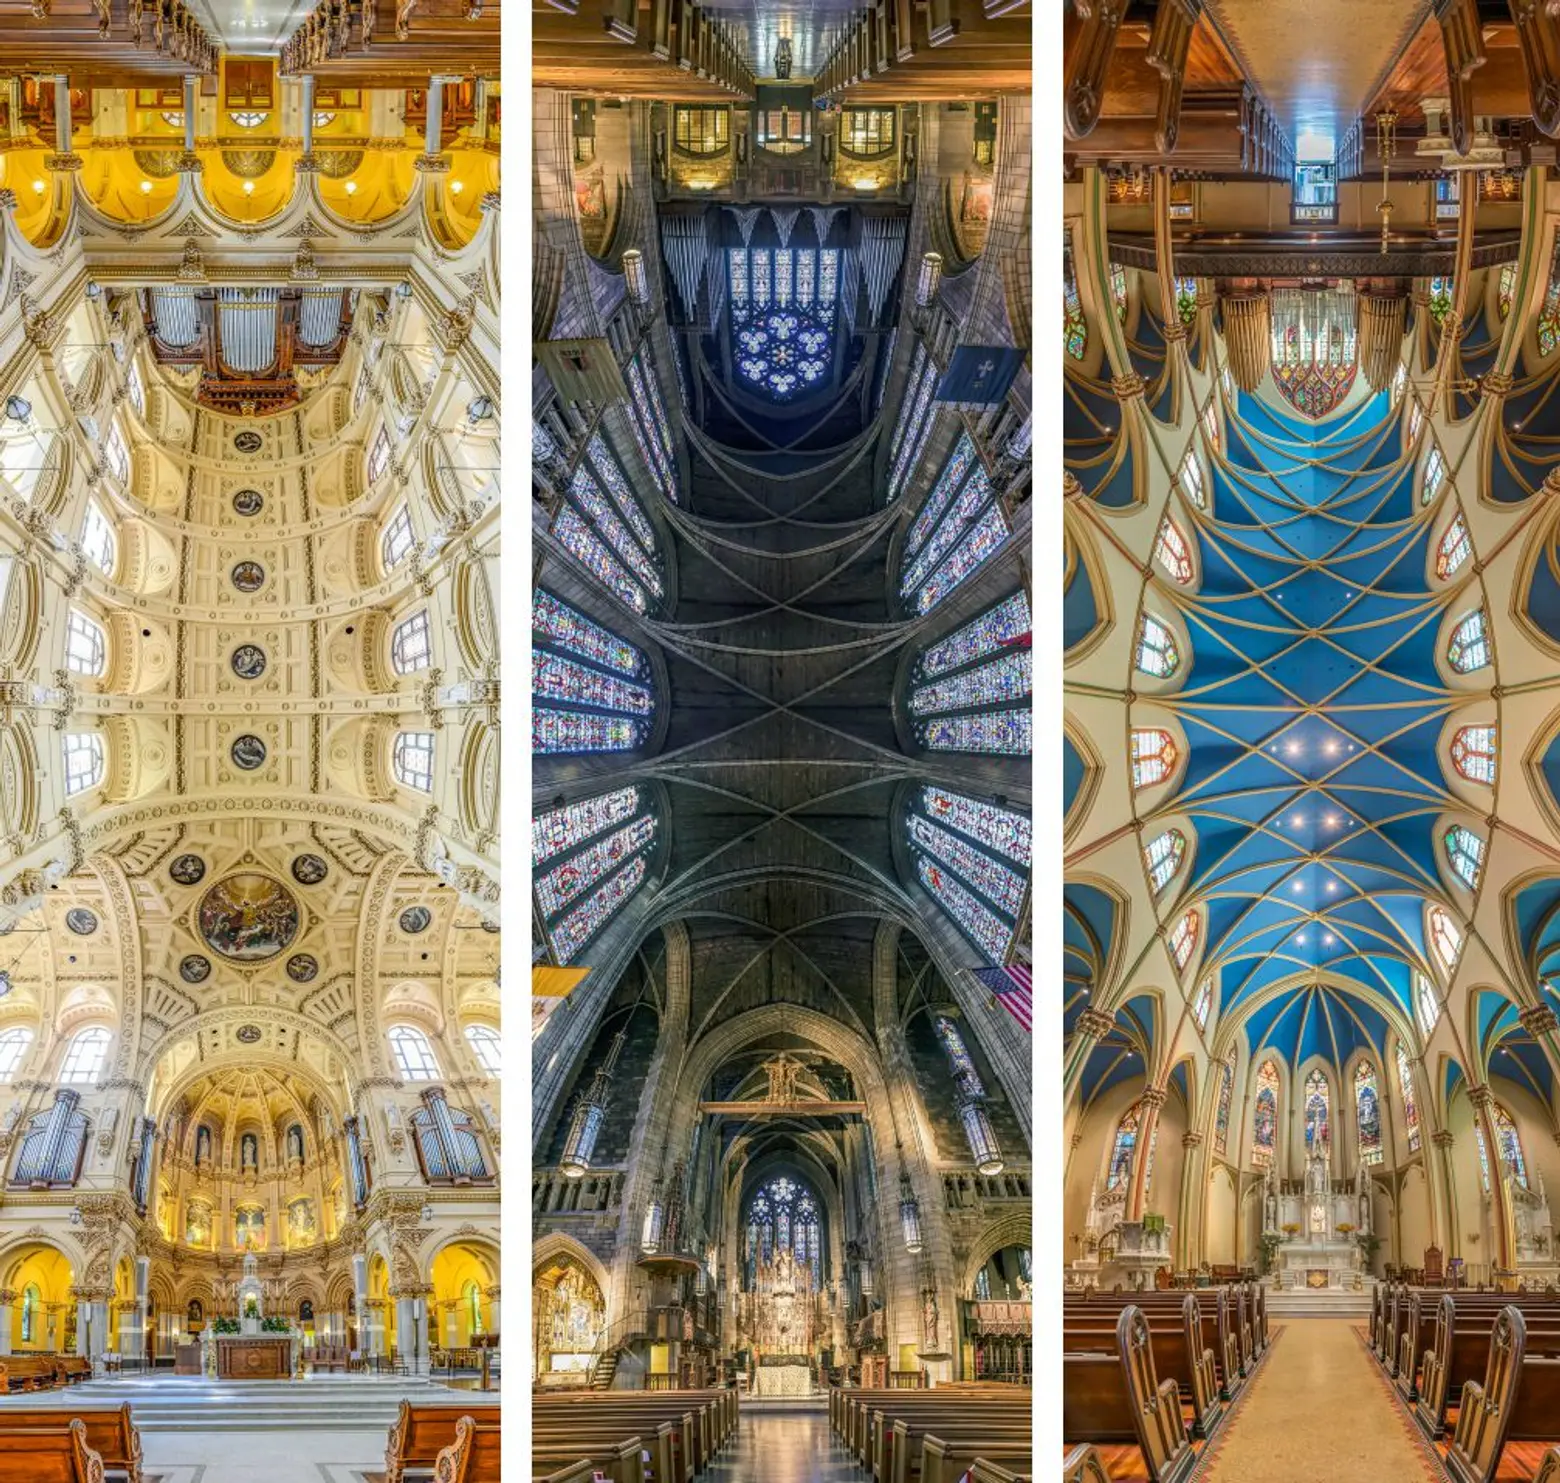 Richard Silver’s Vertical Panoramic Photos of New York Churches Are Vertigo-Inducing